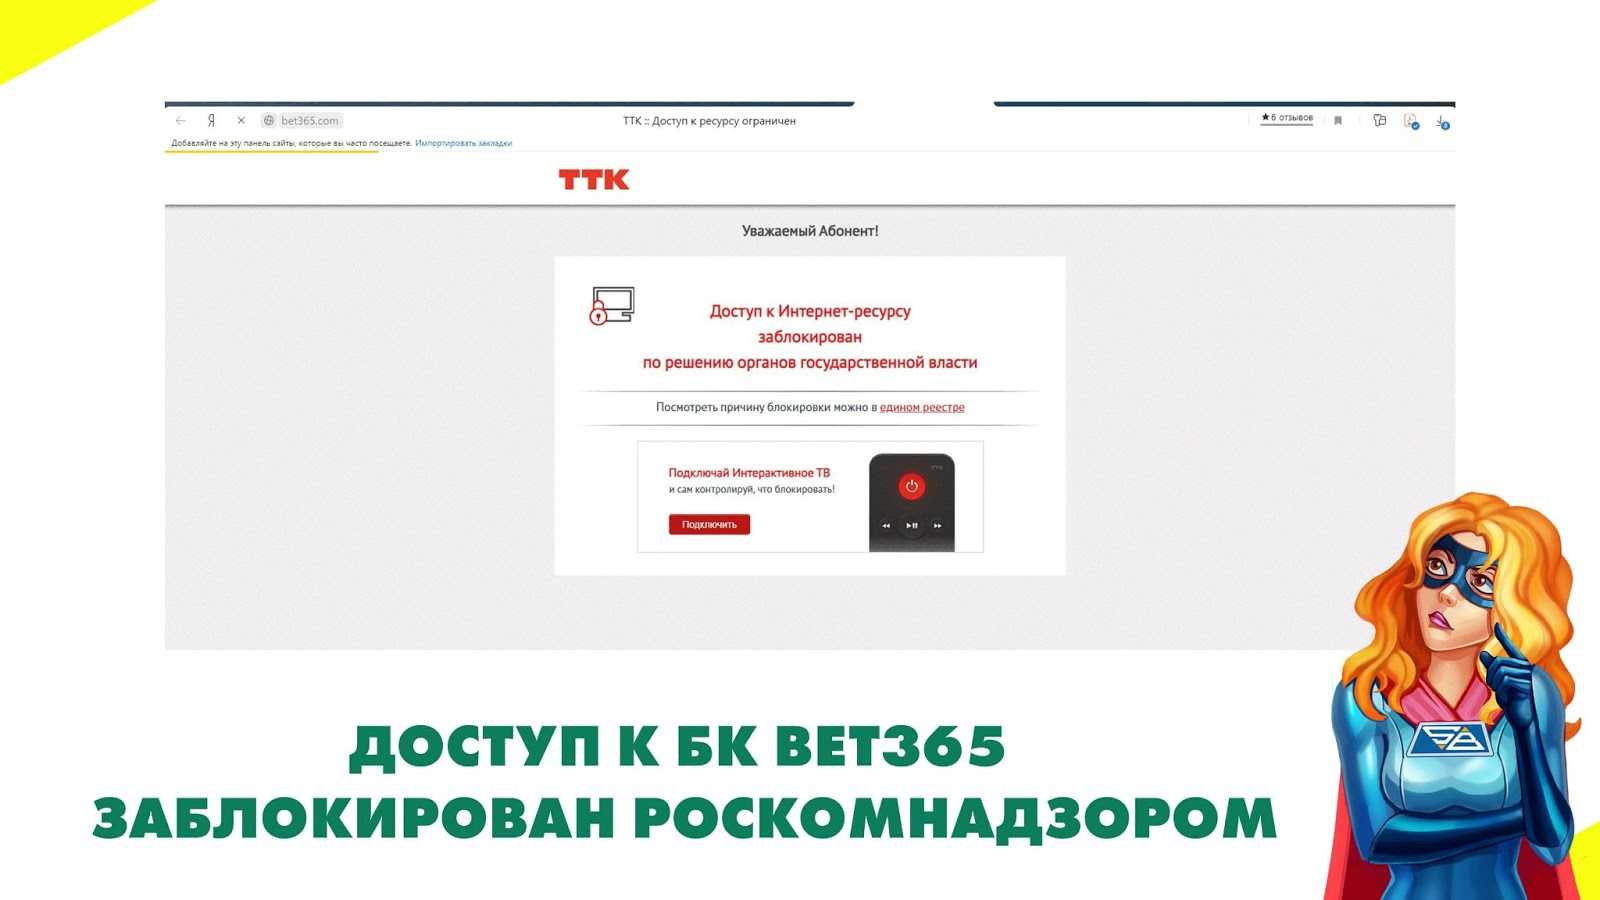 Роскомнадзор блокирует доступ к официальному сайту bet365.com для пользователей из России